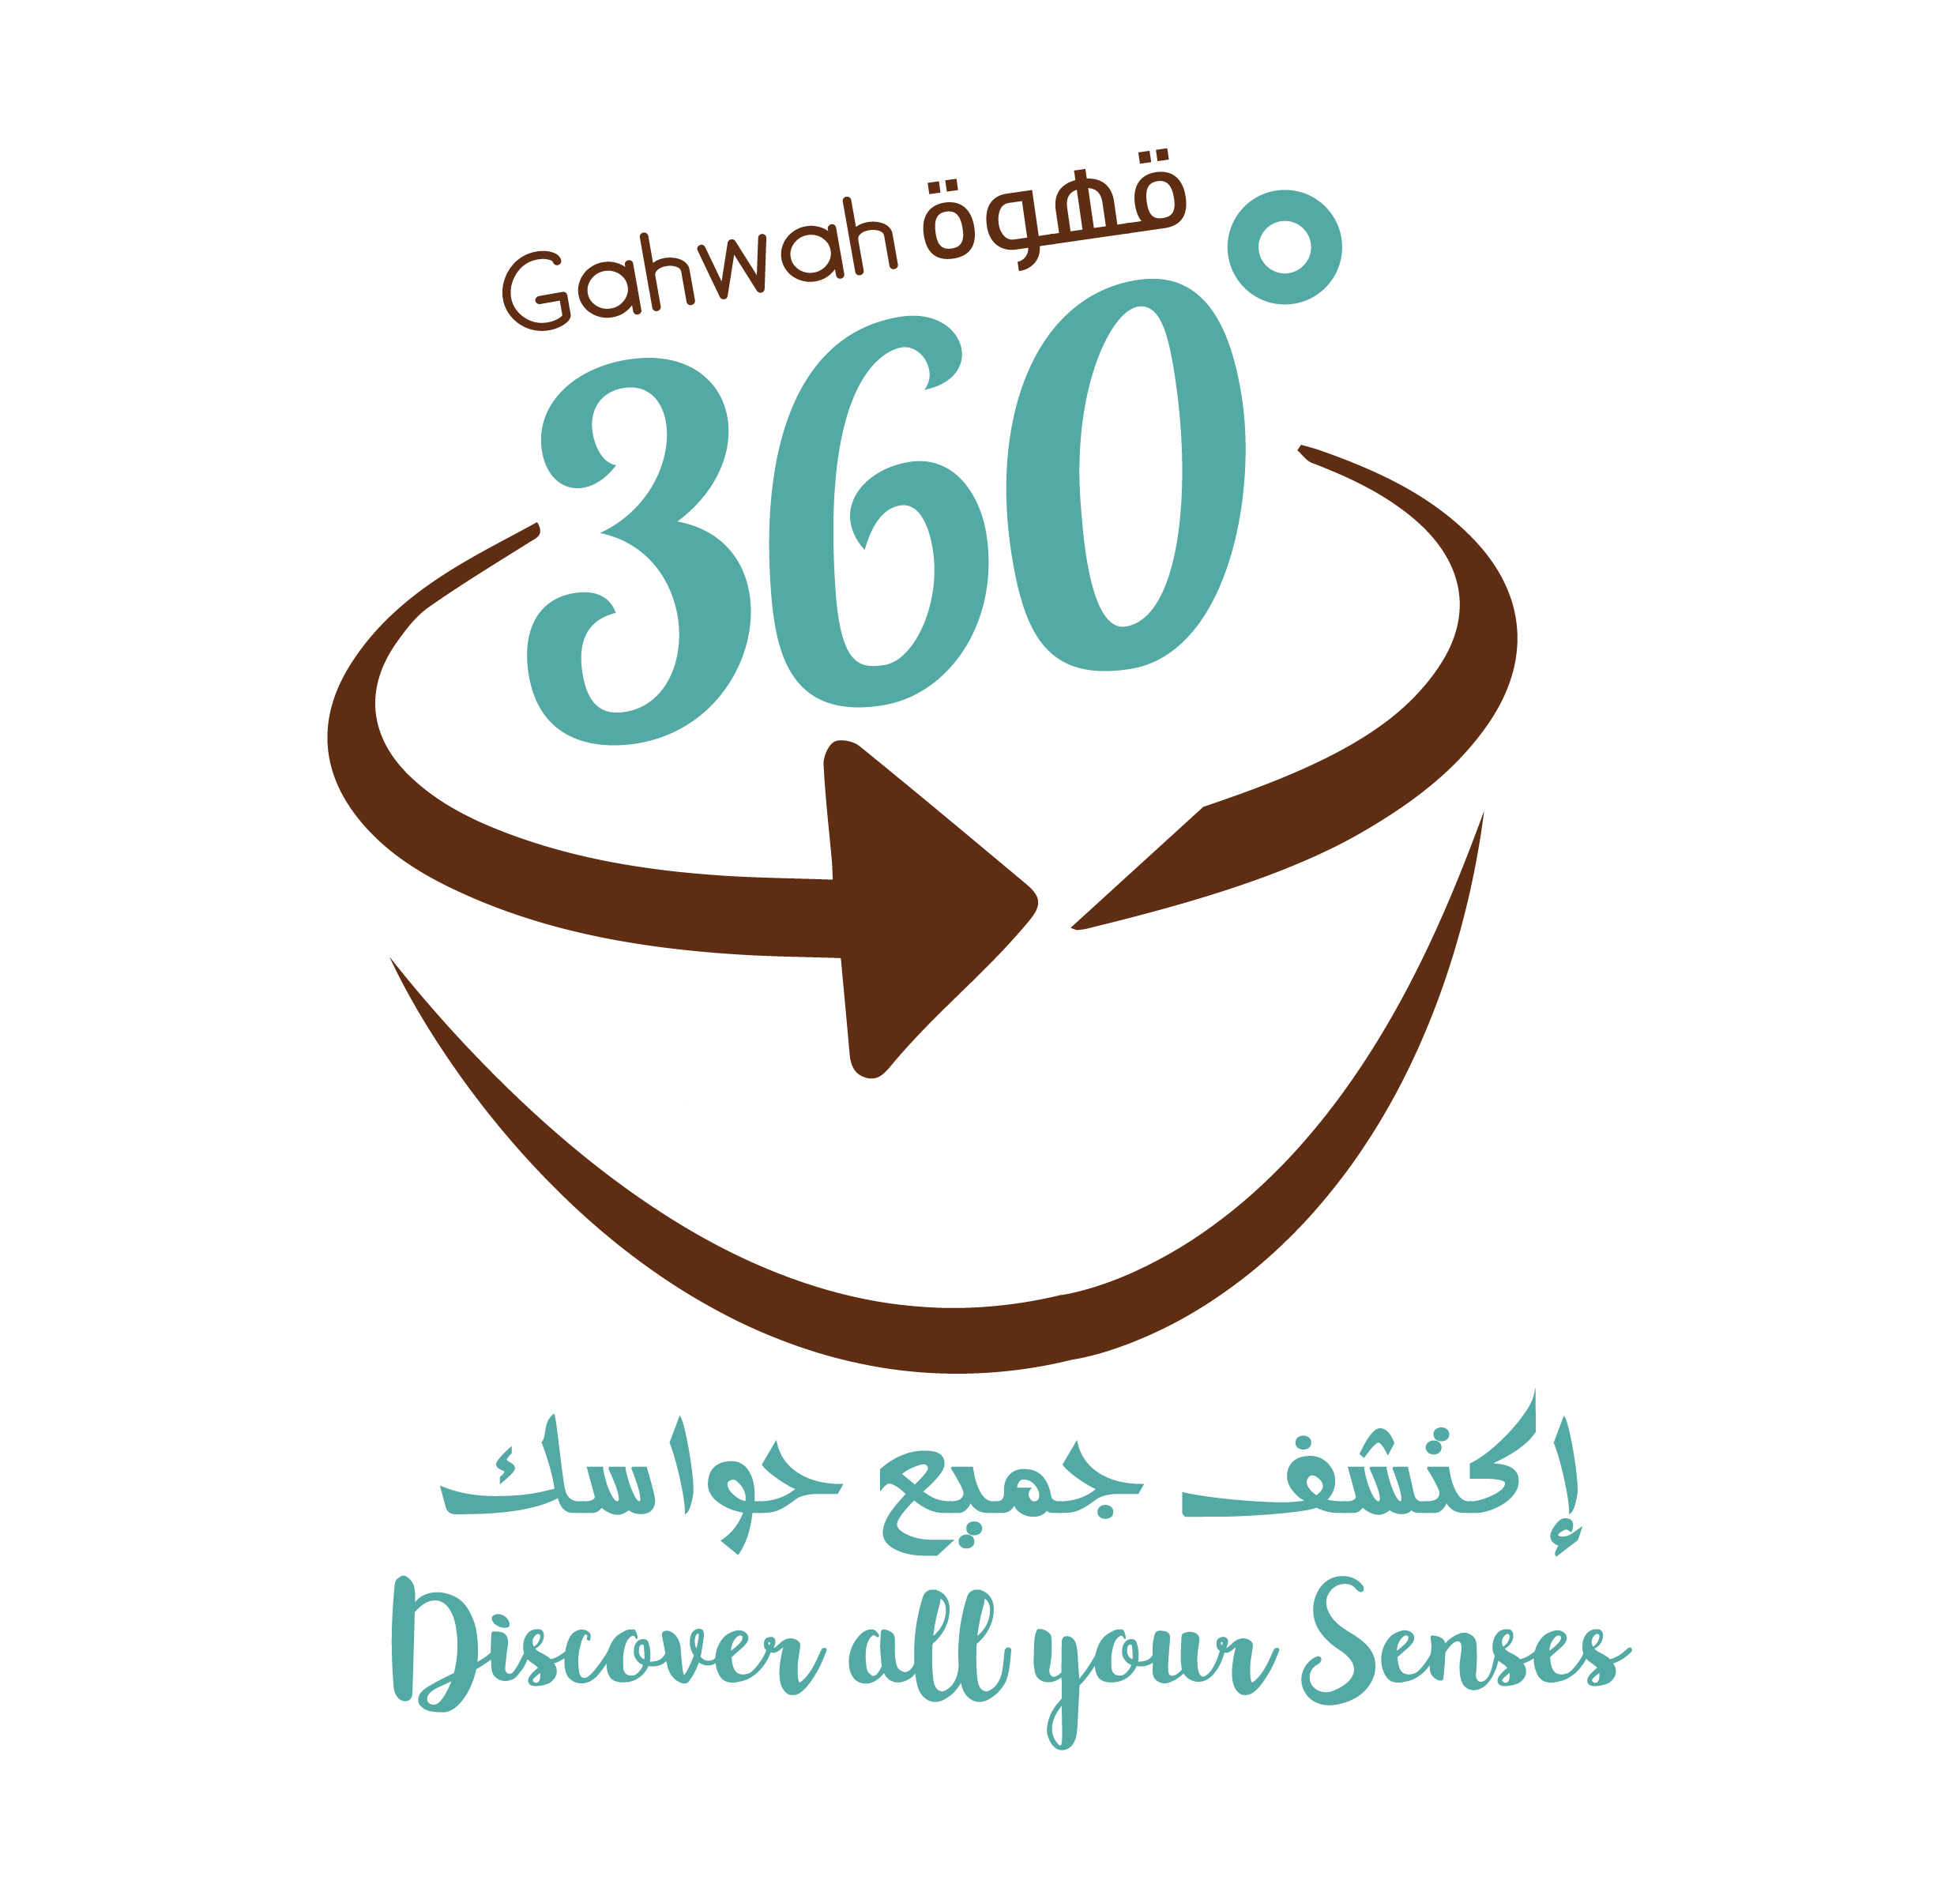 Gahwah 360